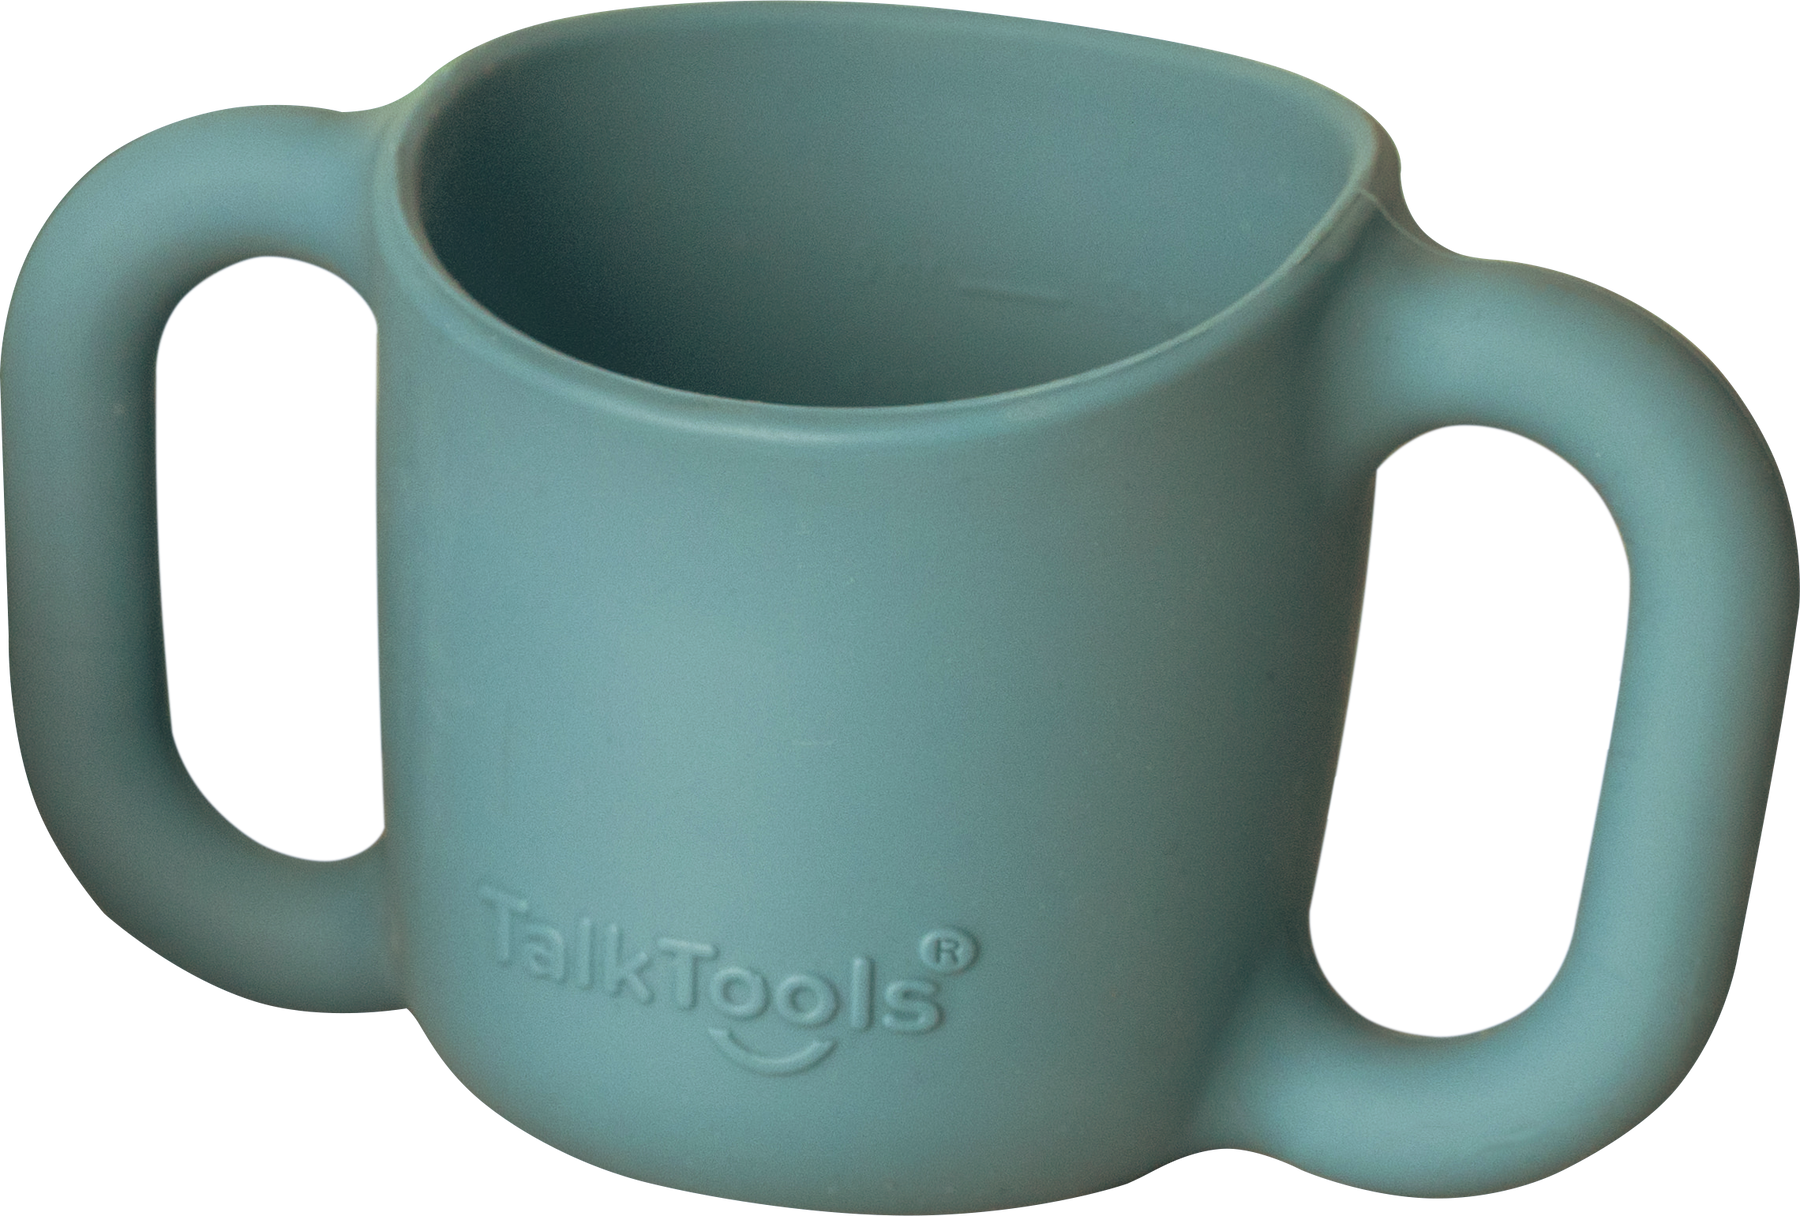 TalkTools® Straw Cups